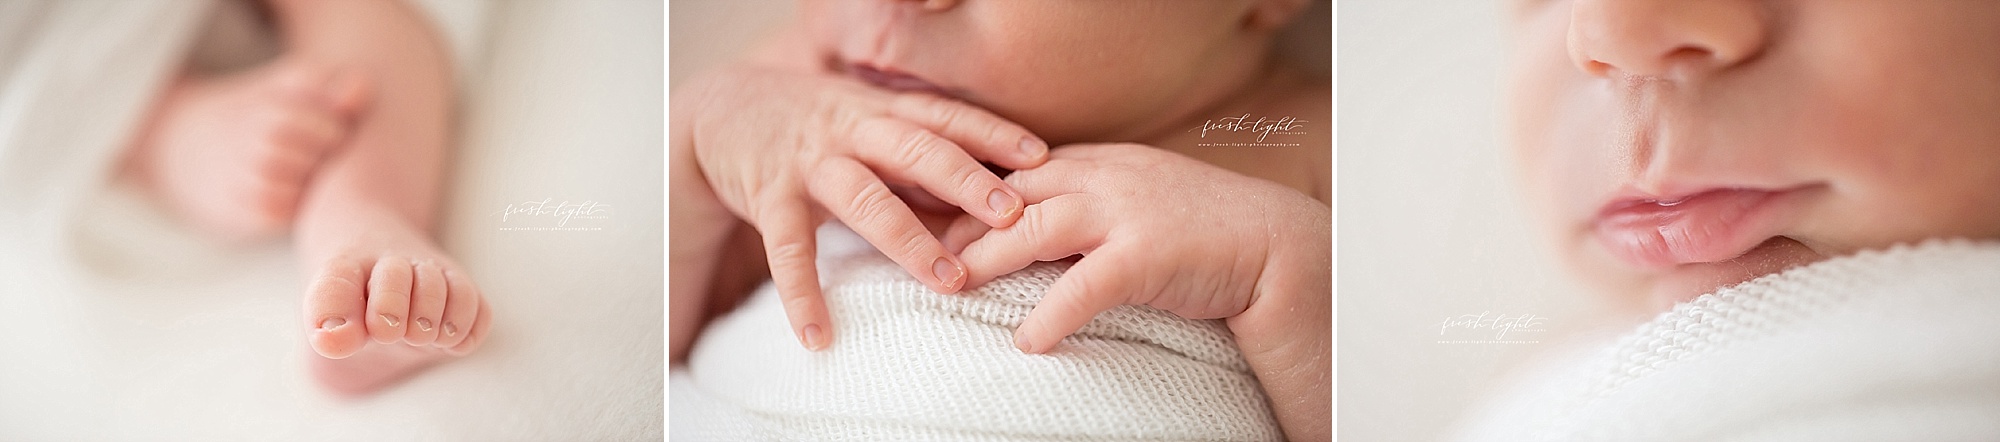 newborn macro photographs 